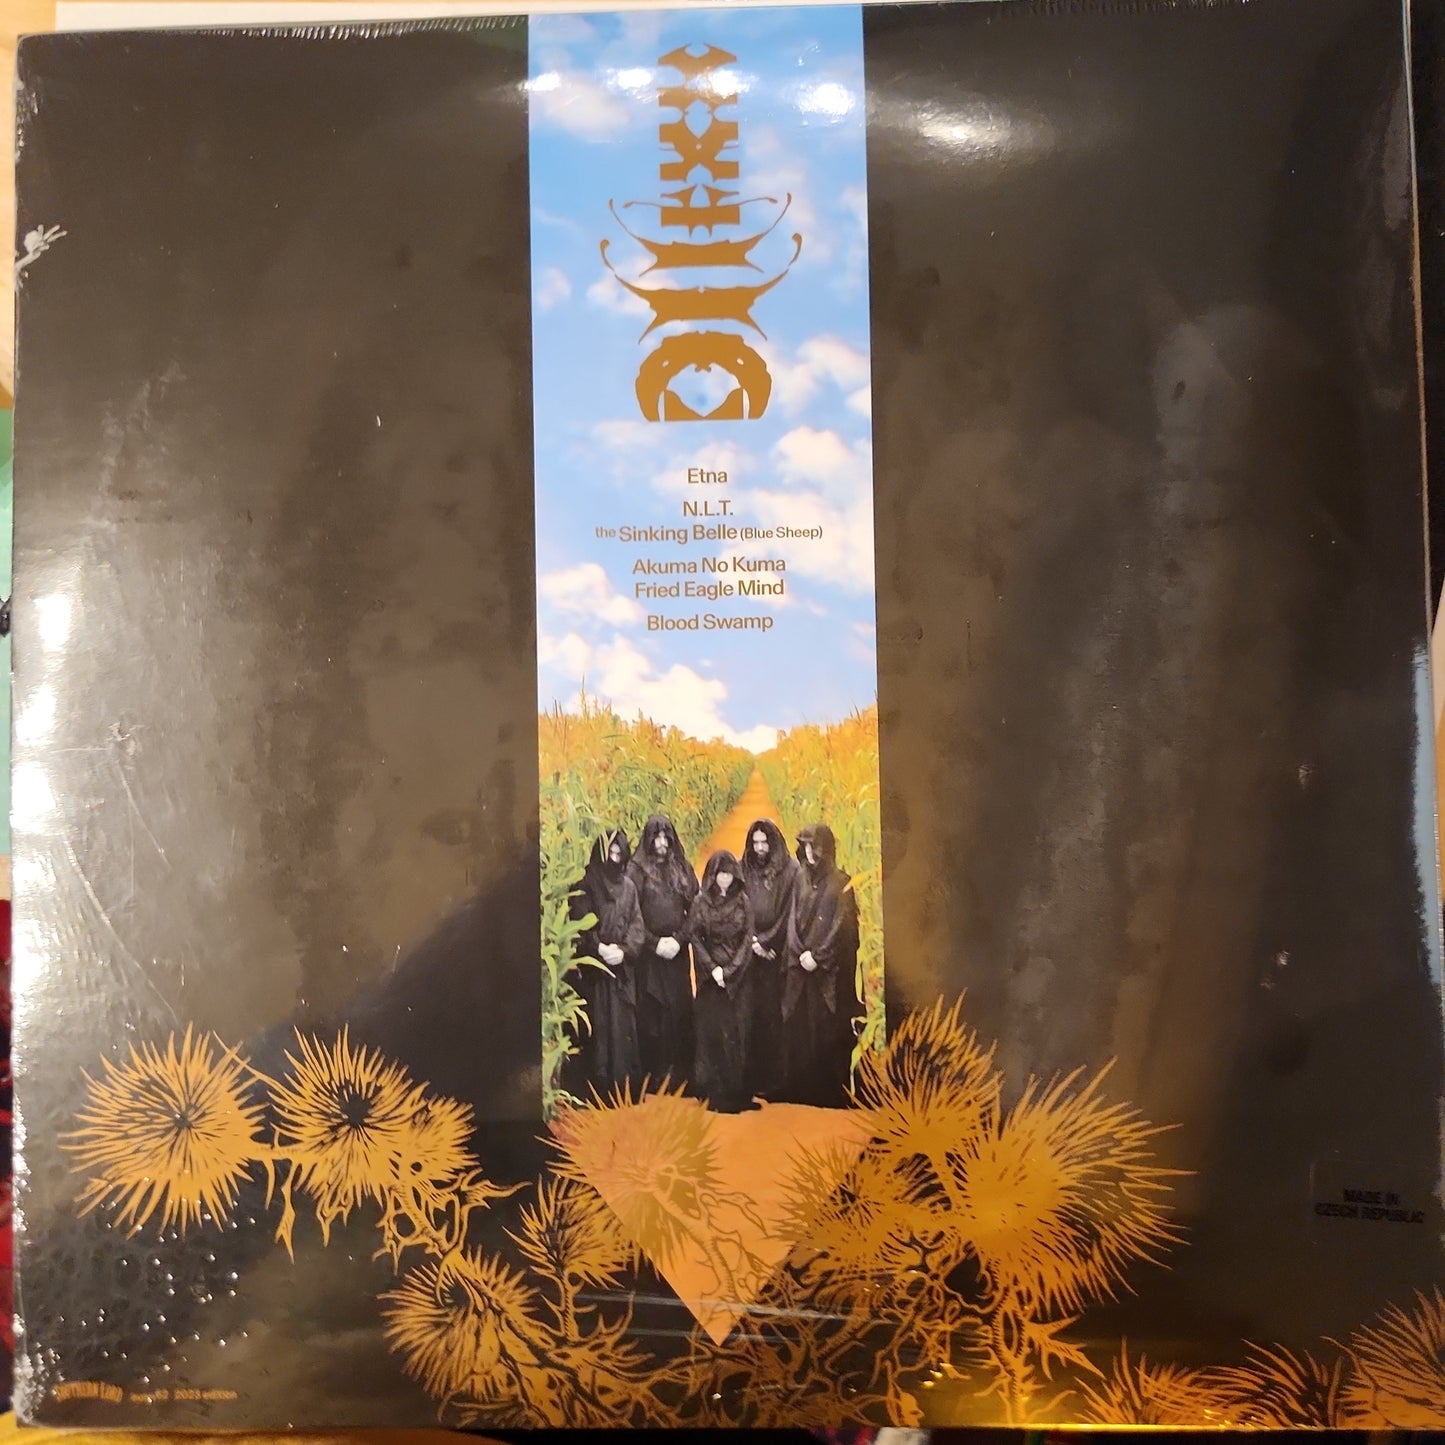 Sunn O))) and Boris - Altar - Limited Double Vinyl LP